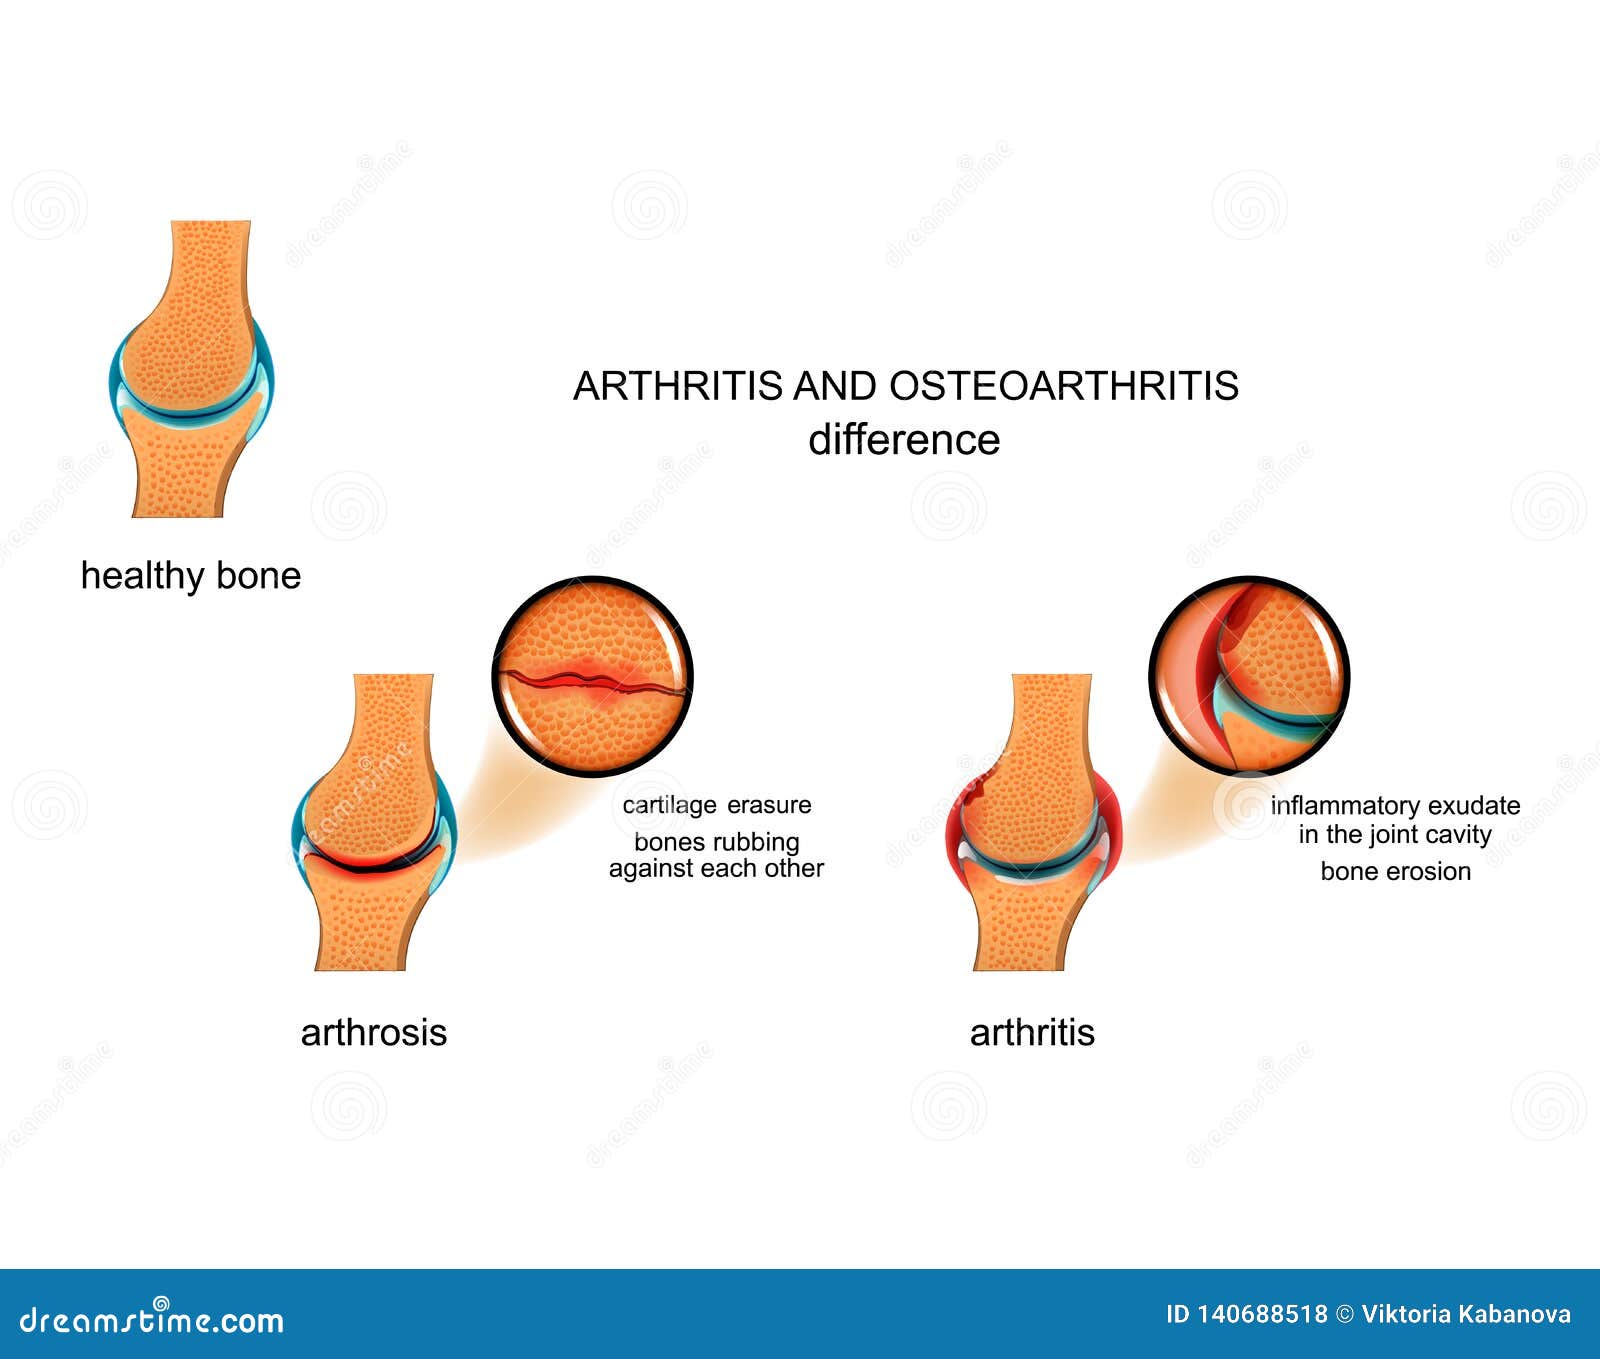 arthrosis arthrosis